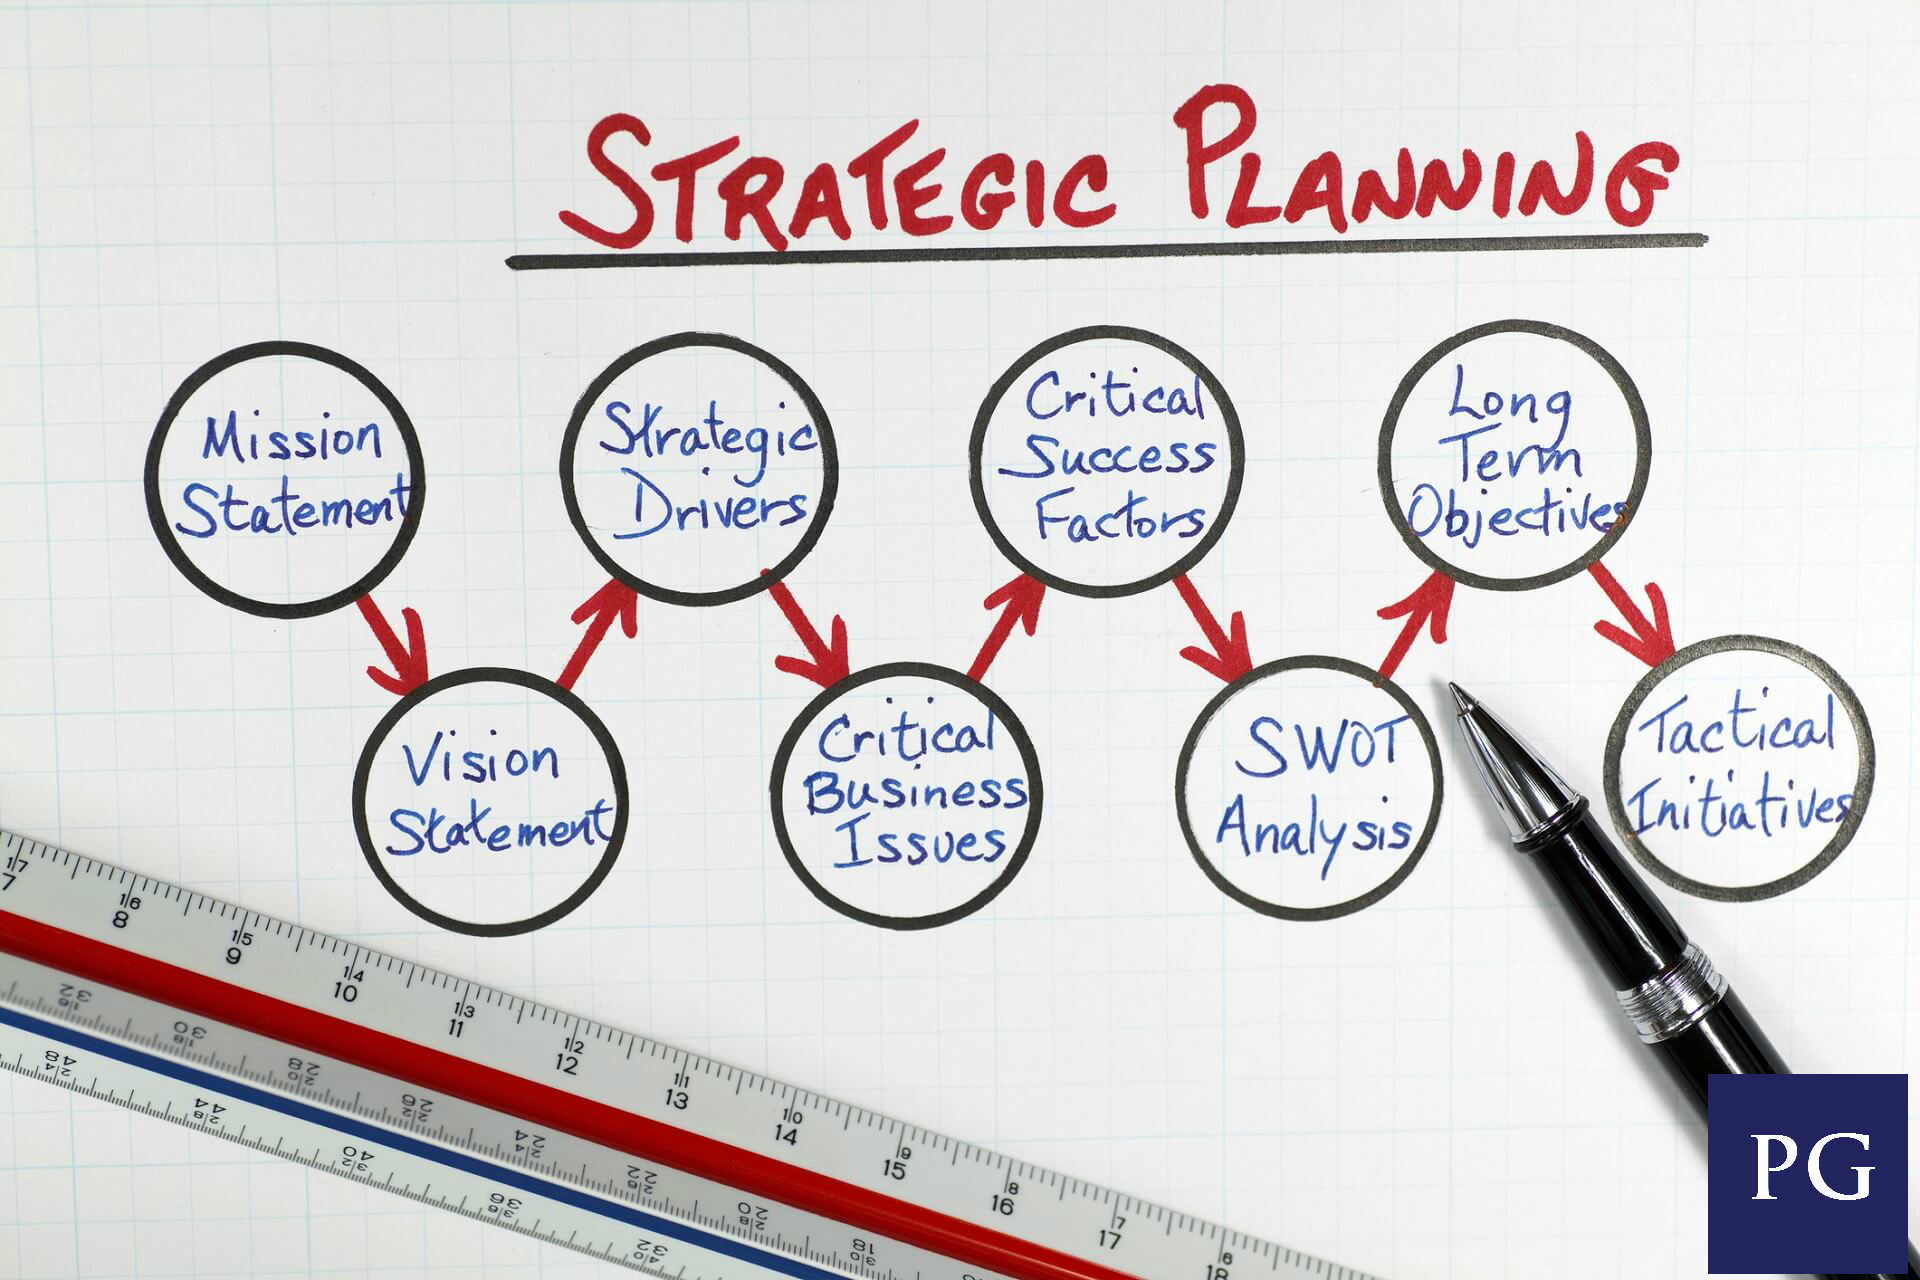 Strategic Planning or Die